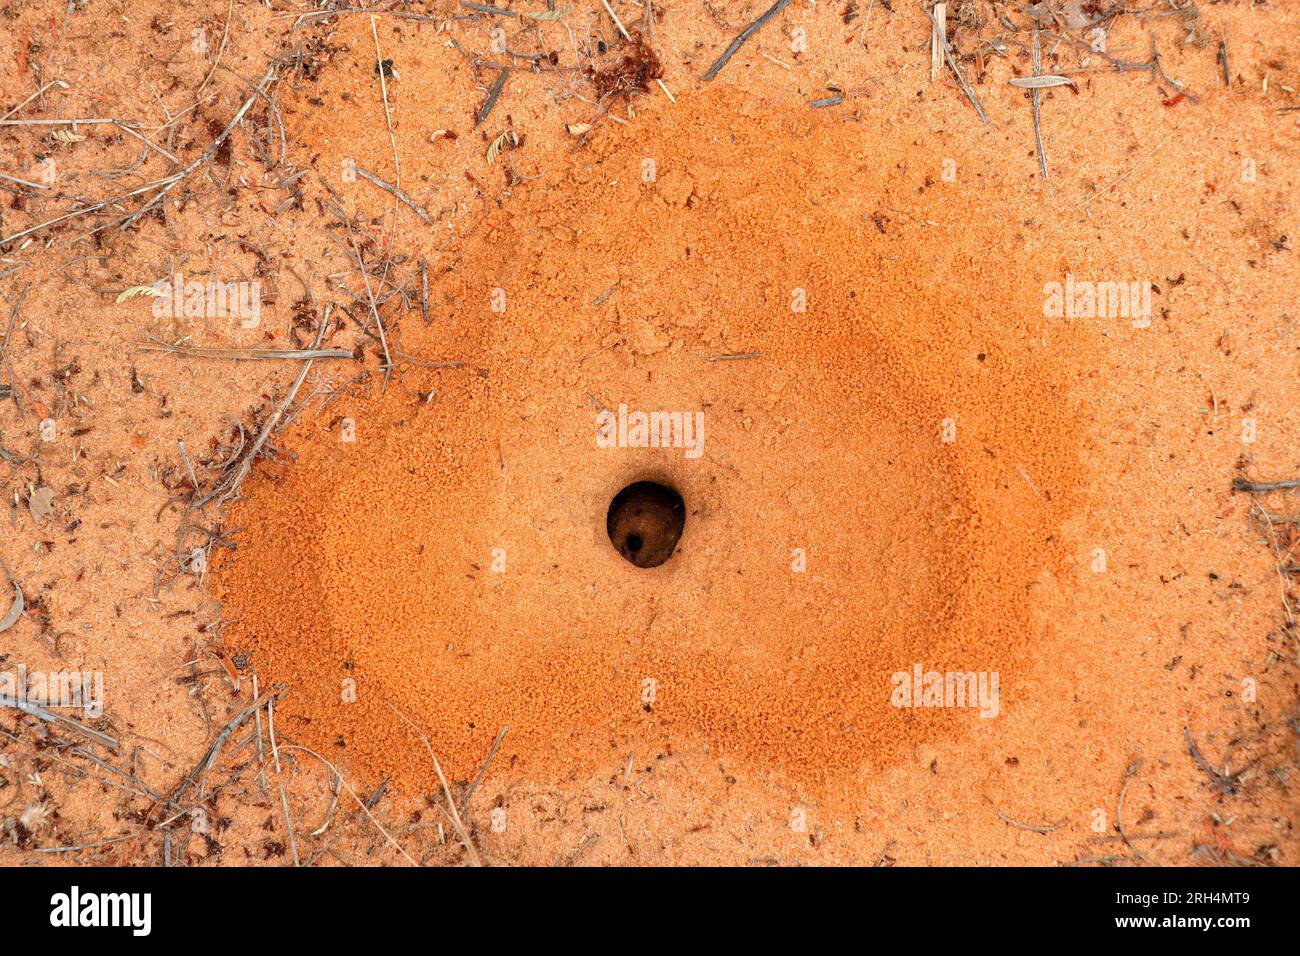 Herzförmiges Ameisennest mit kleinen schwarzen Arbeiterameisen, Südafrika Stockfoto